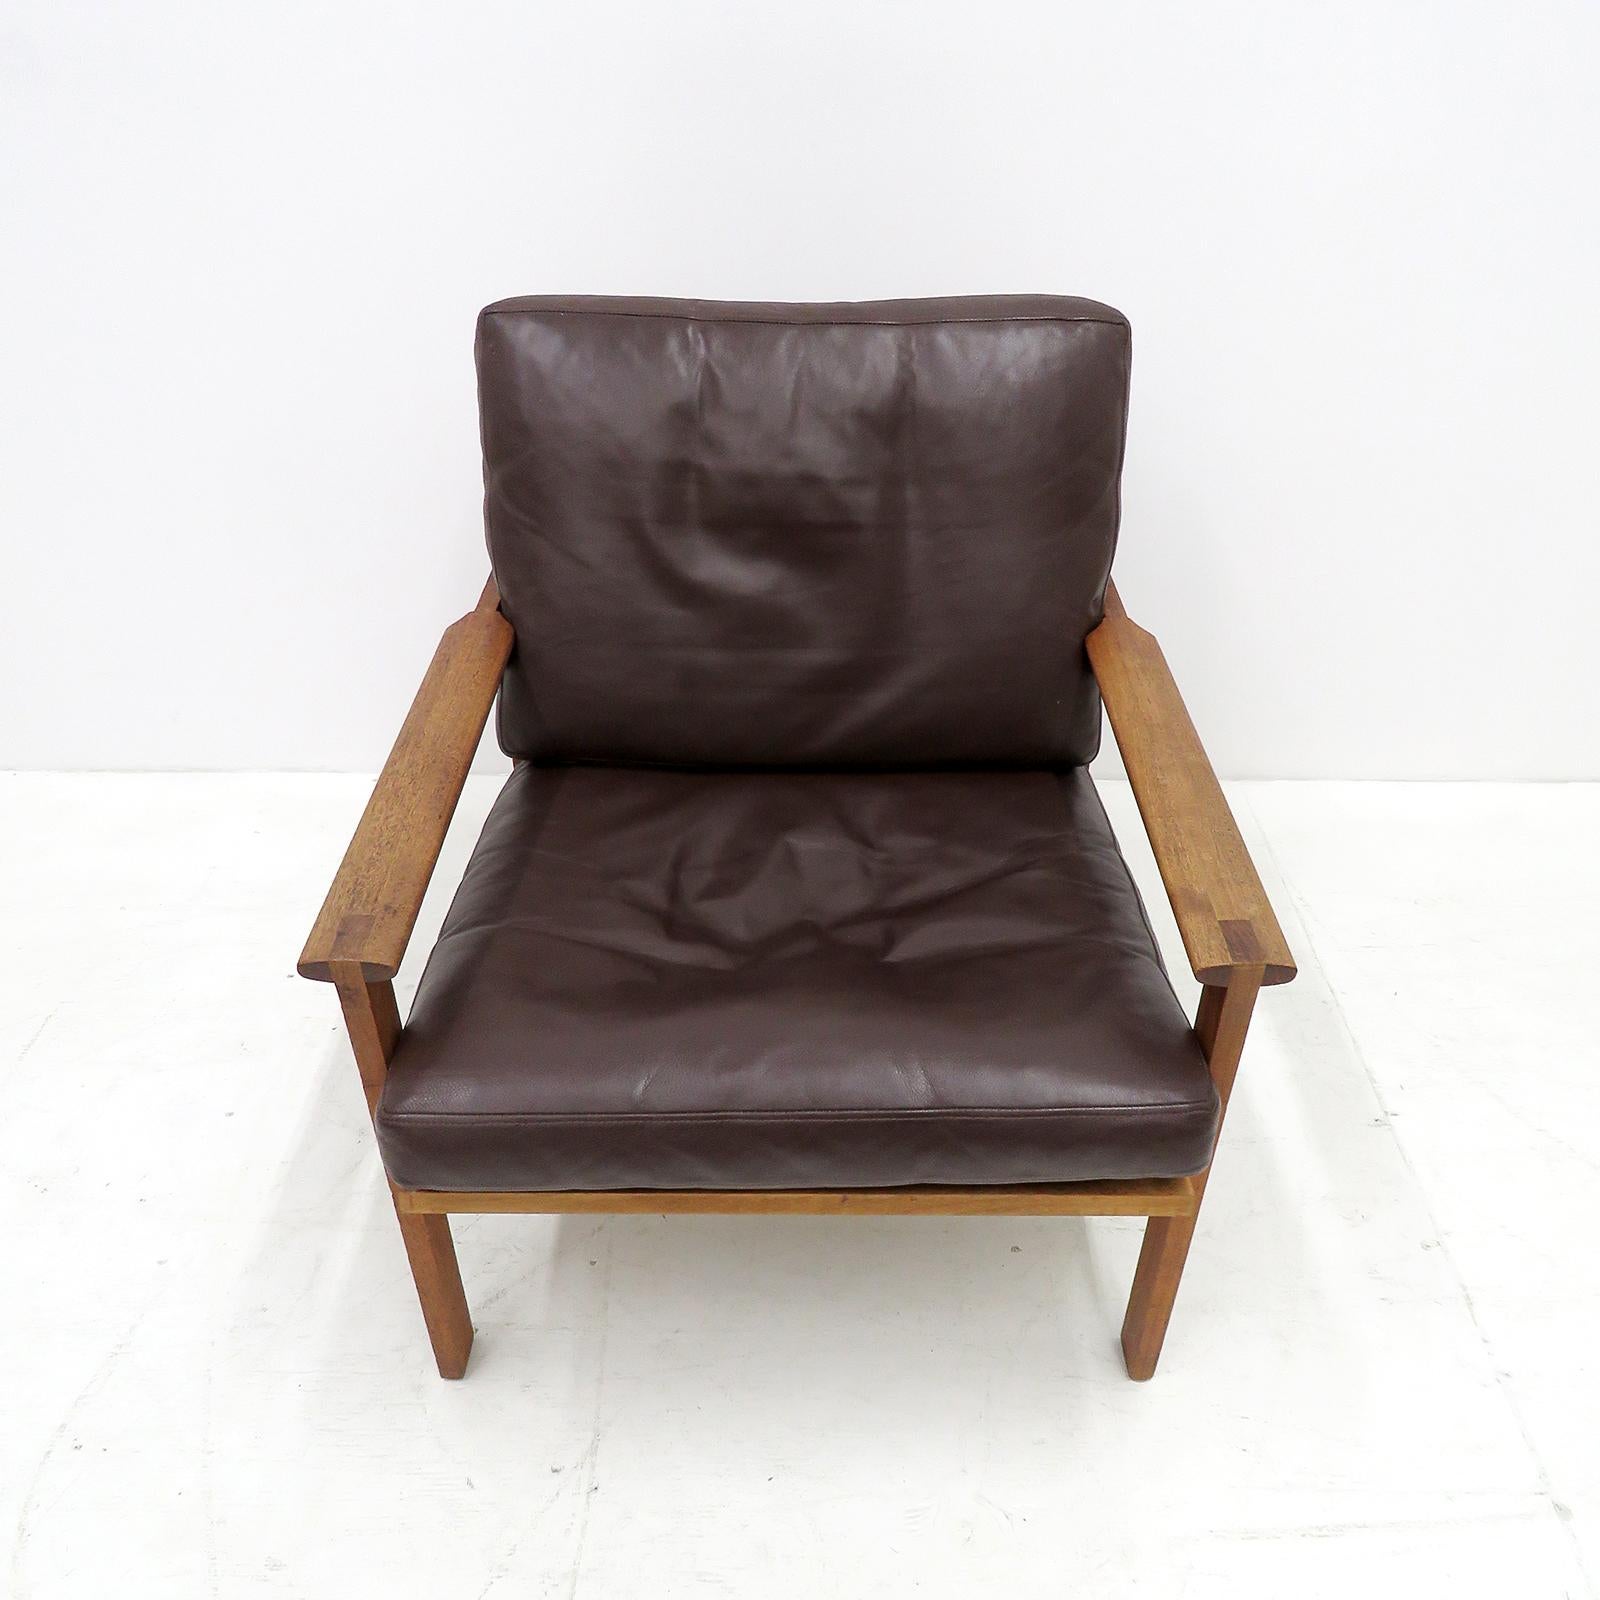 Bemerkenswertes Paar Sessel aus der Capella-Serie, entworfen von Illum Wikkelsø, hergestellt von Niels Eilersen in Dänemark, entworfen 1959, Gestell aus massivem Teakholz mit losen Polstern in original dunkelbraunem Leder mit geringen normalen